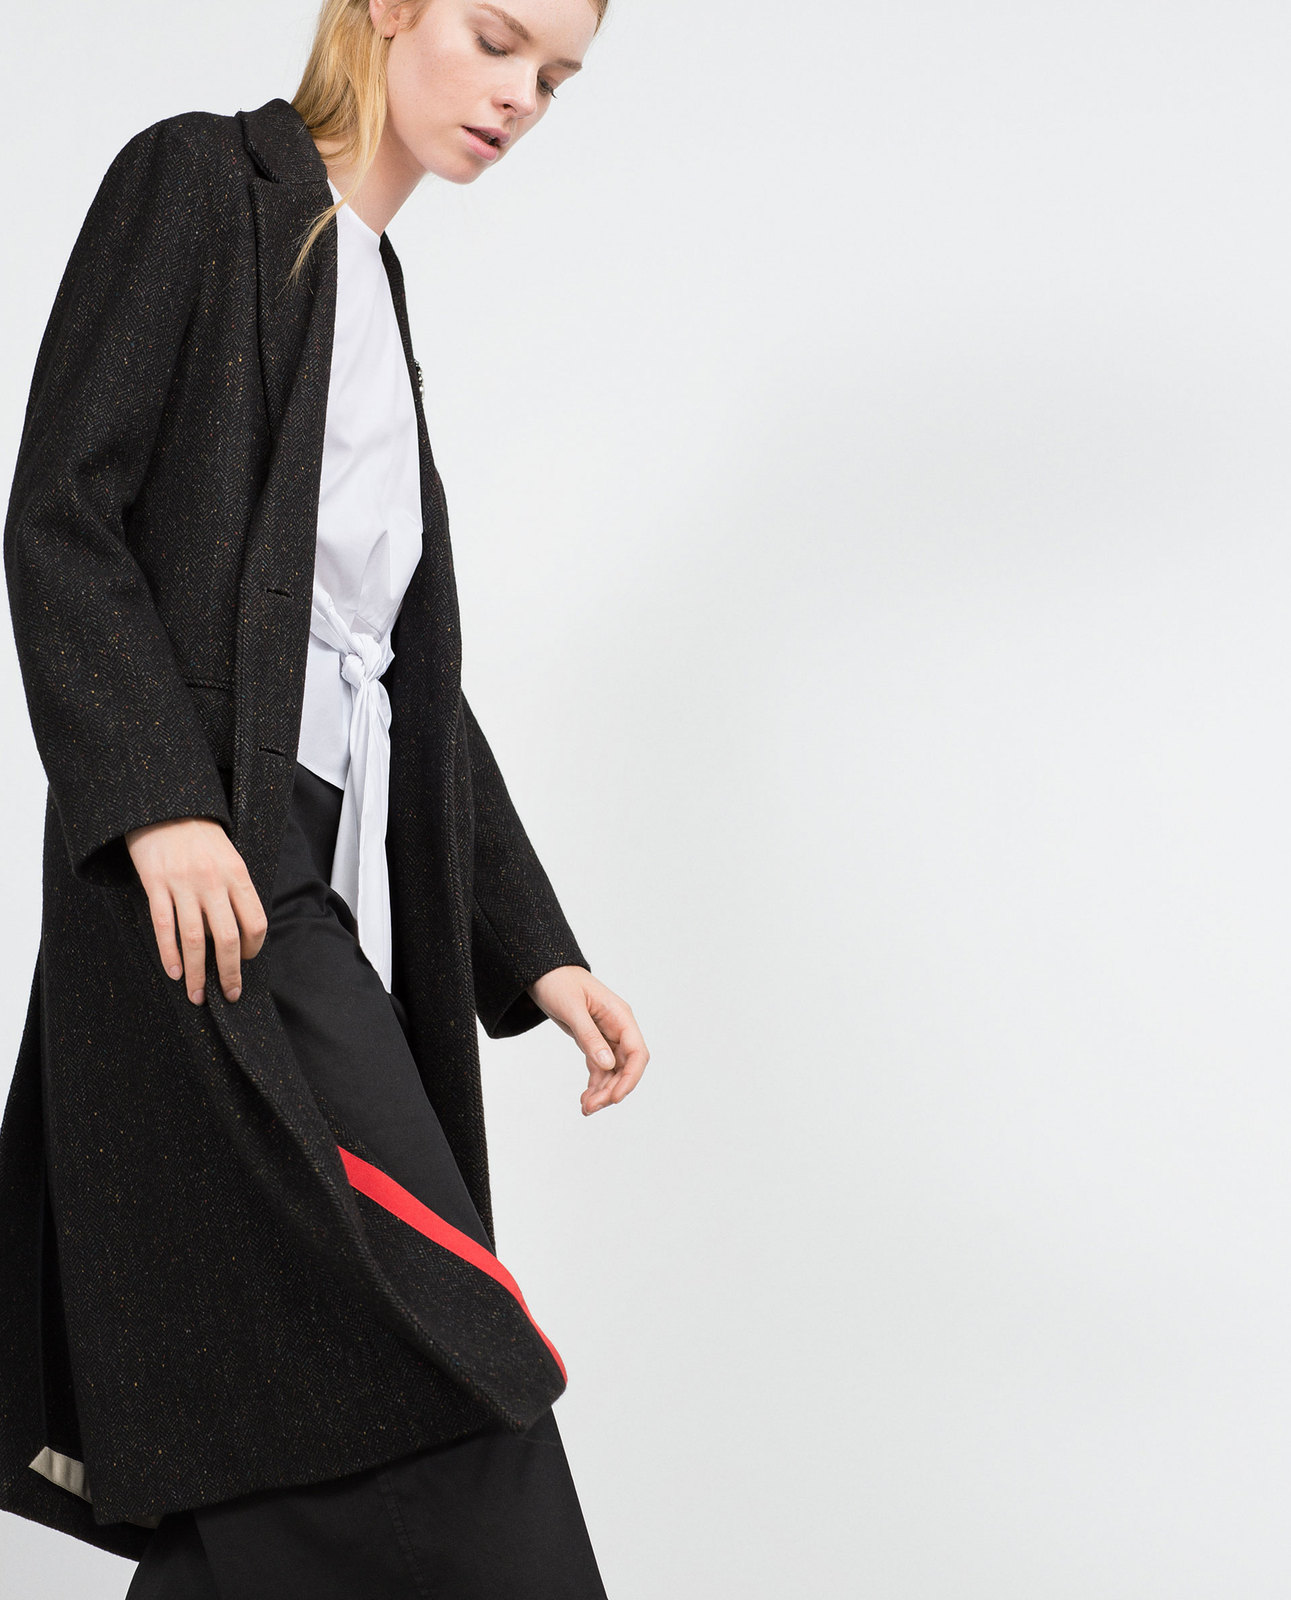 Zara női egyenes szabású kabát 2015.10.15 #88692 fotója